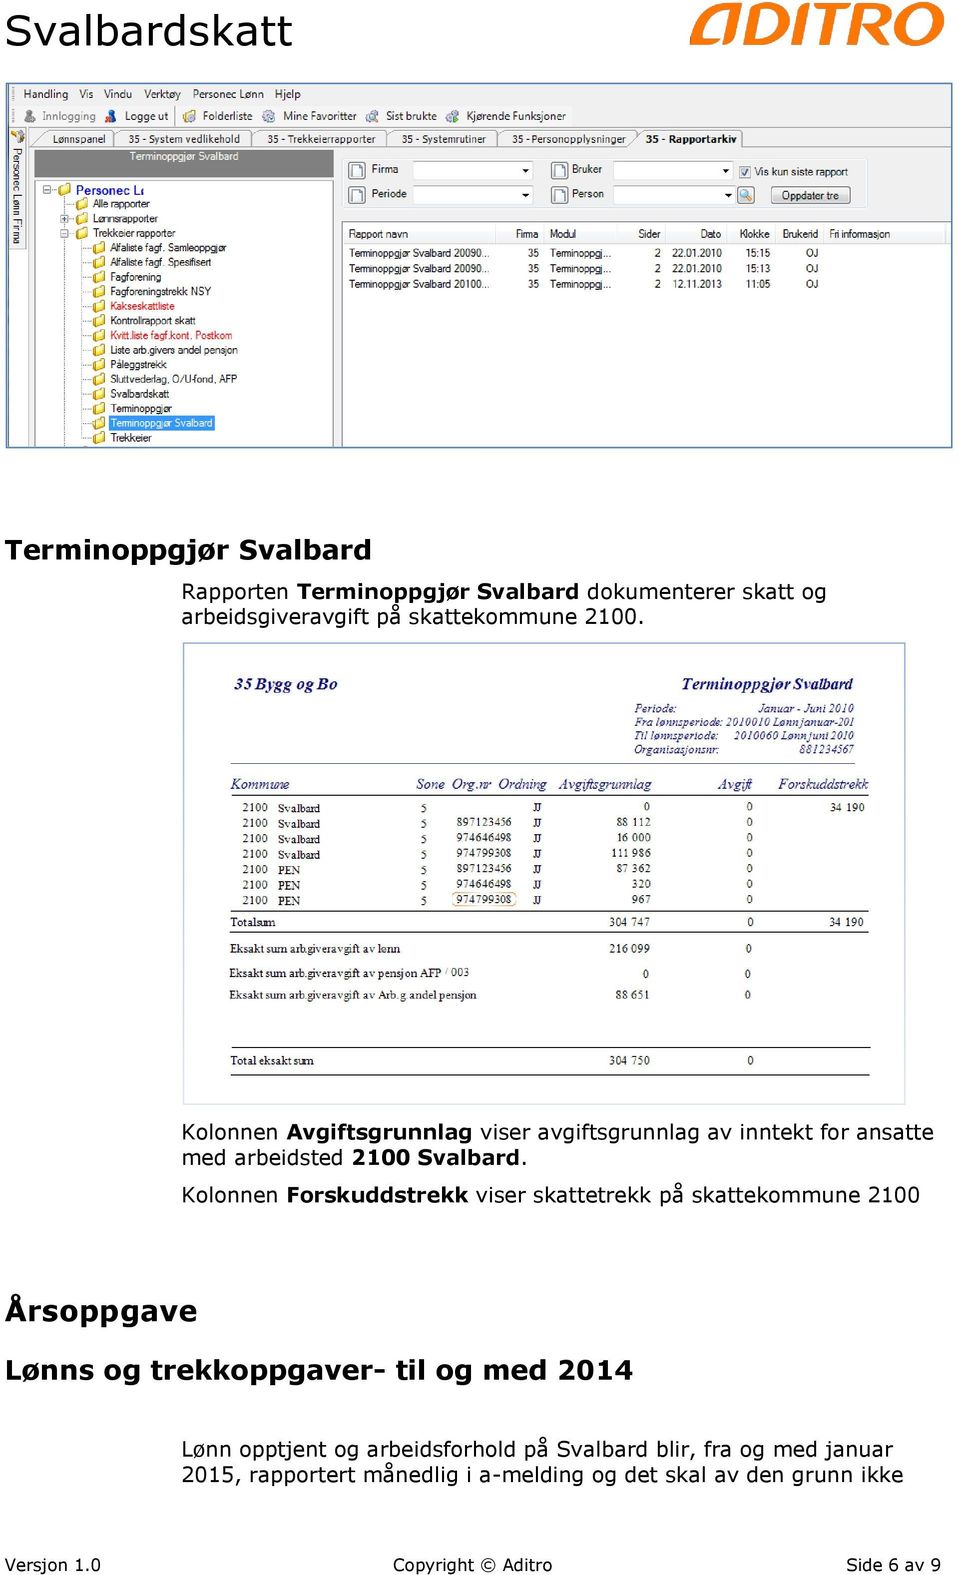 Kolonnen Forskuddstrekk viser skattetrekk på skattekommune 2100 Årsoppgave Lønns og trekkoppgaver- til og med 2014 Lønn